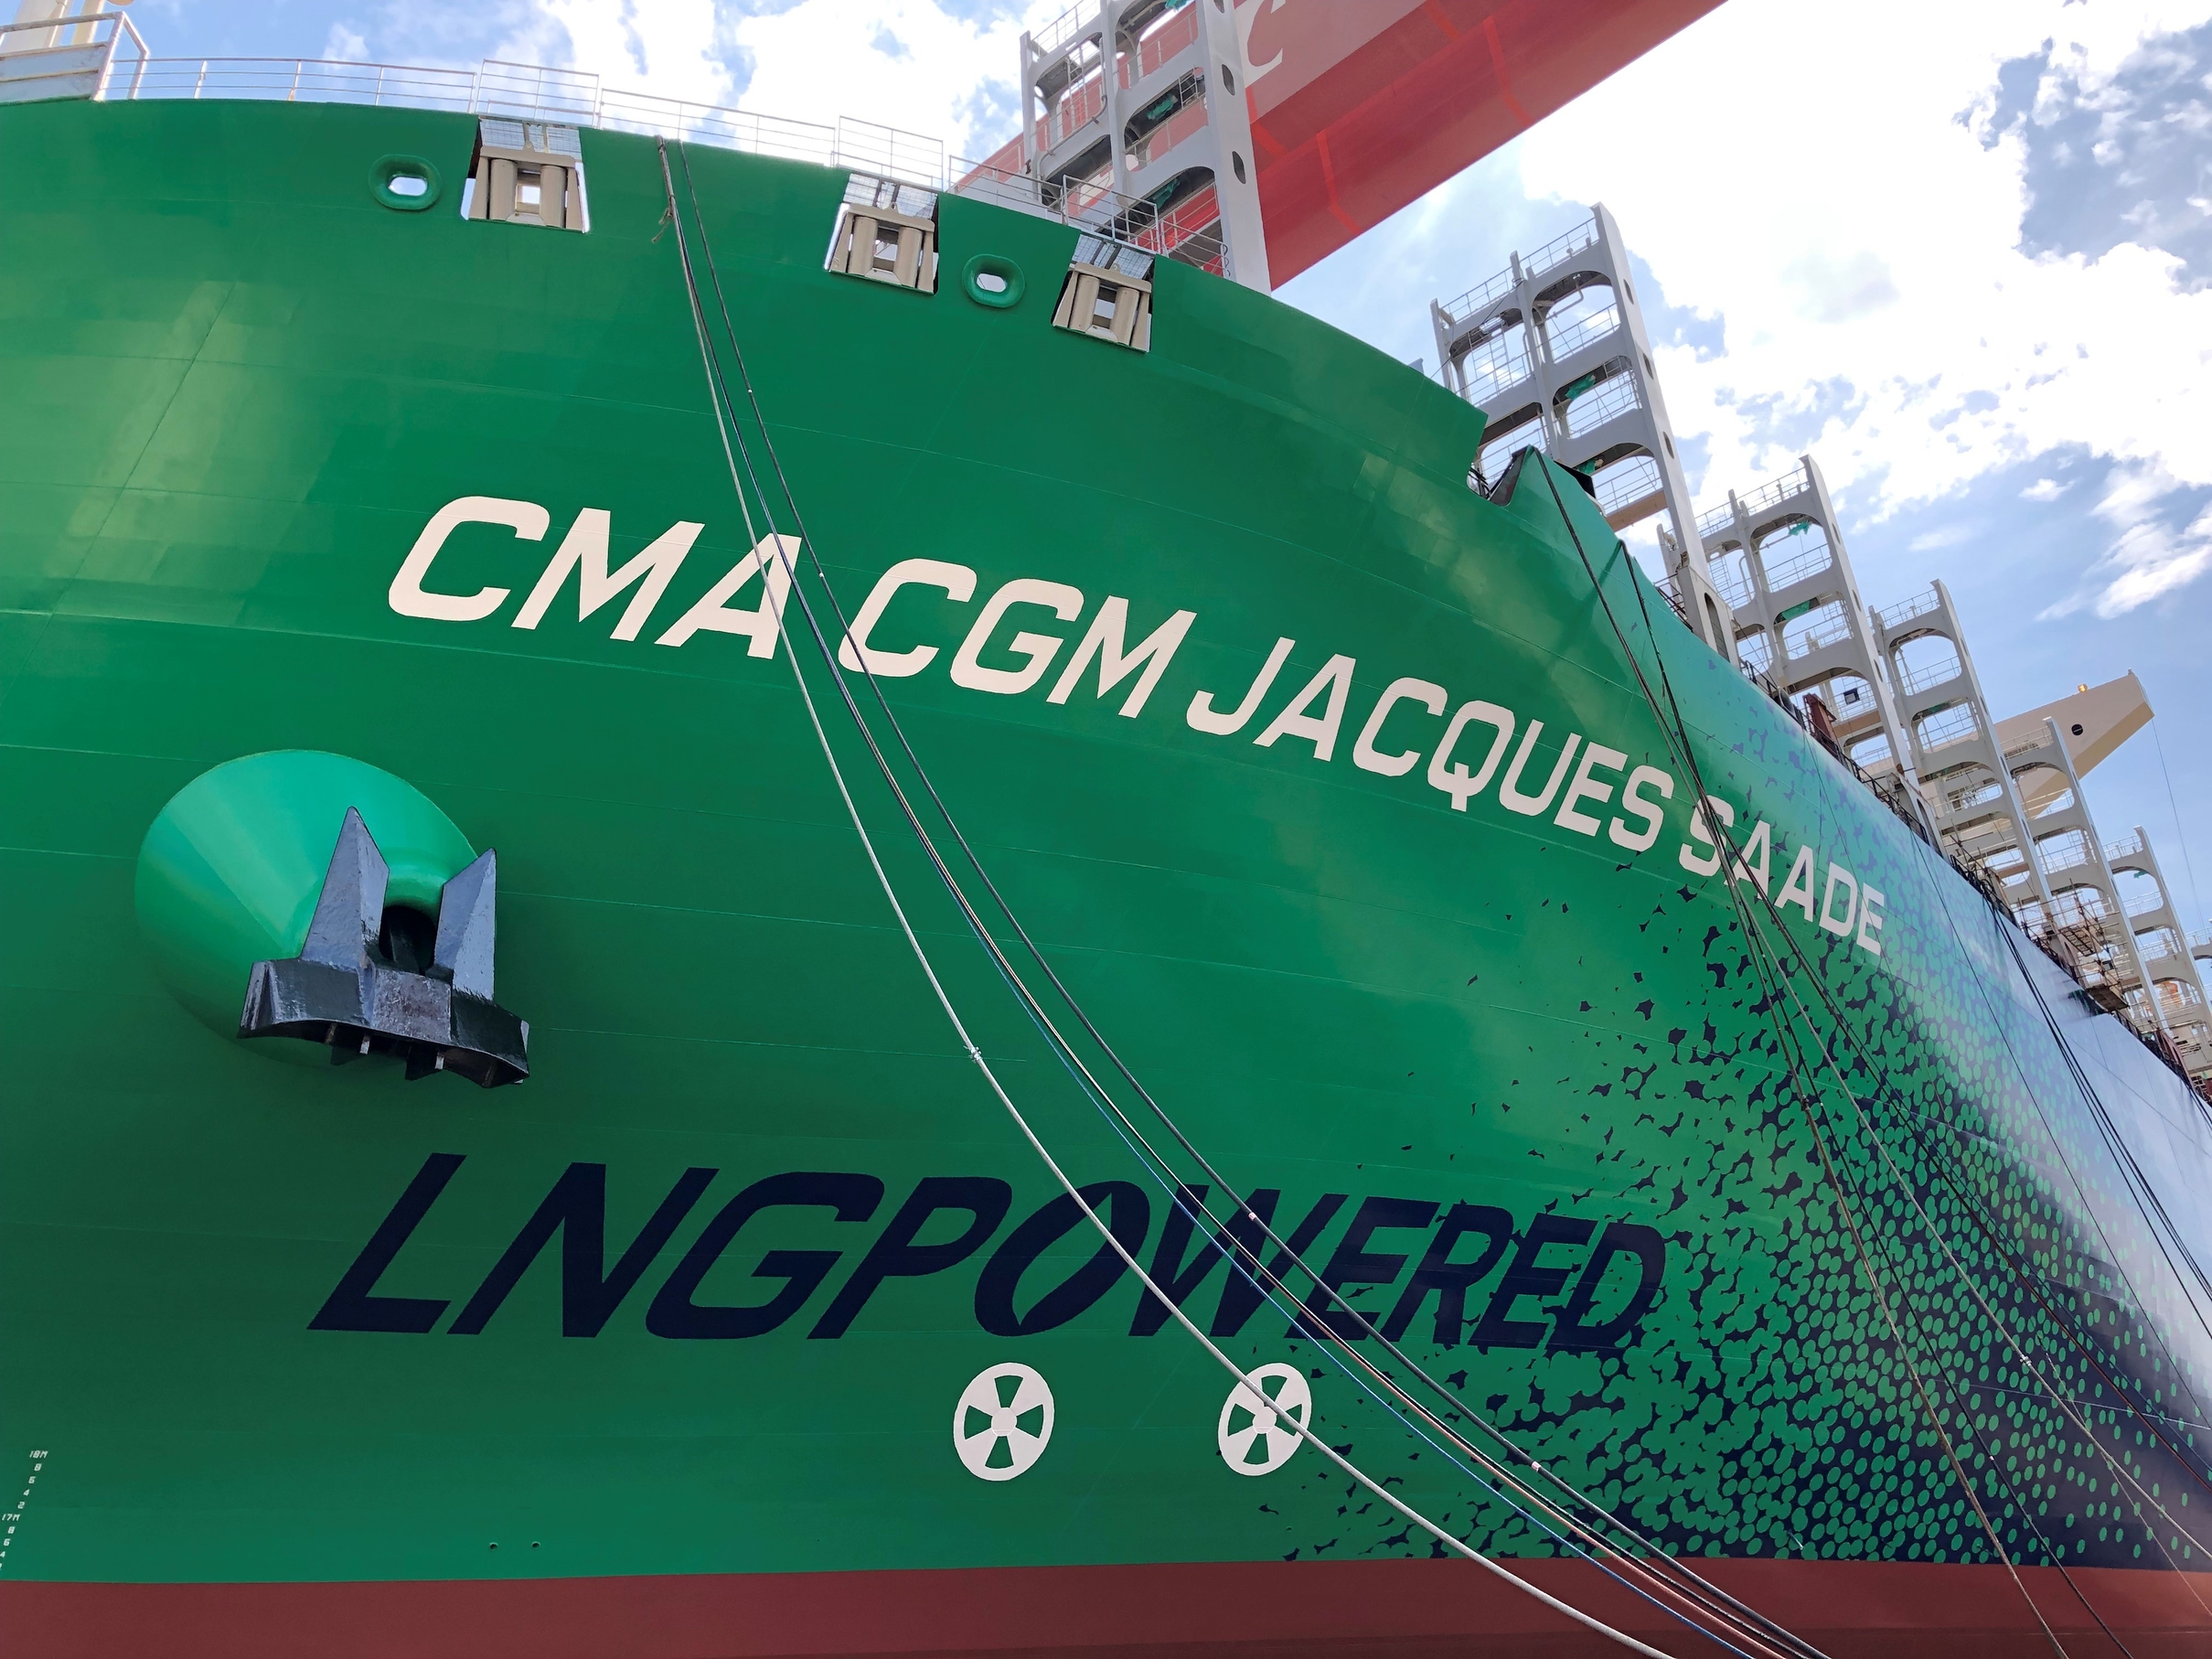 Une première mondiale : CMA CGM met à l’eau le plus grand porte-conteneurs au monde propulsé au GNL